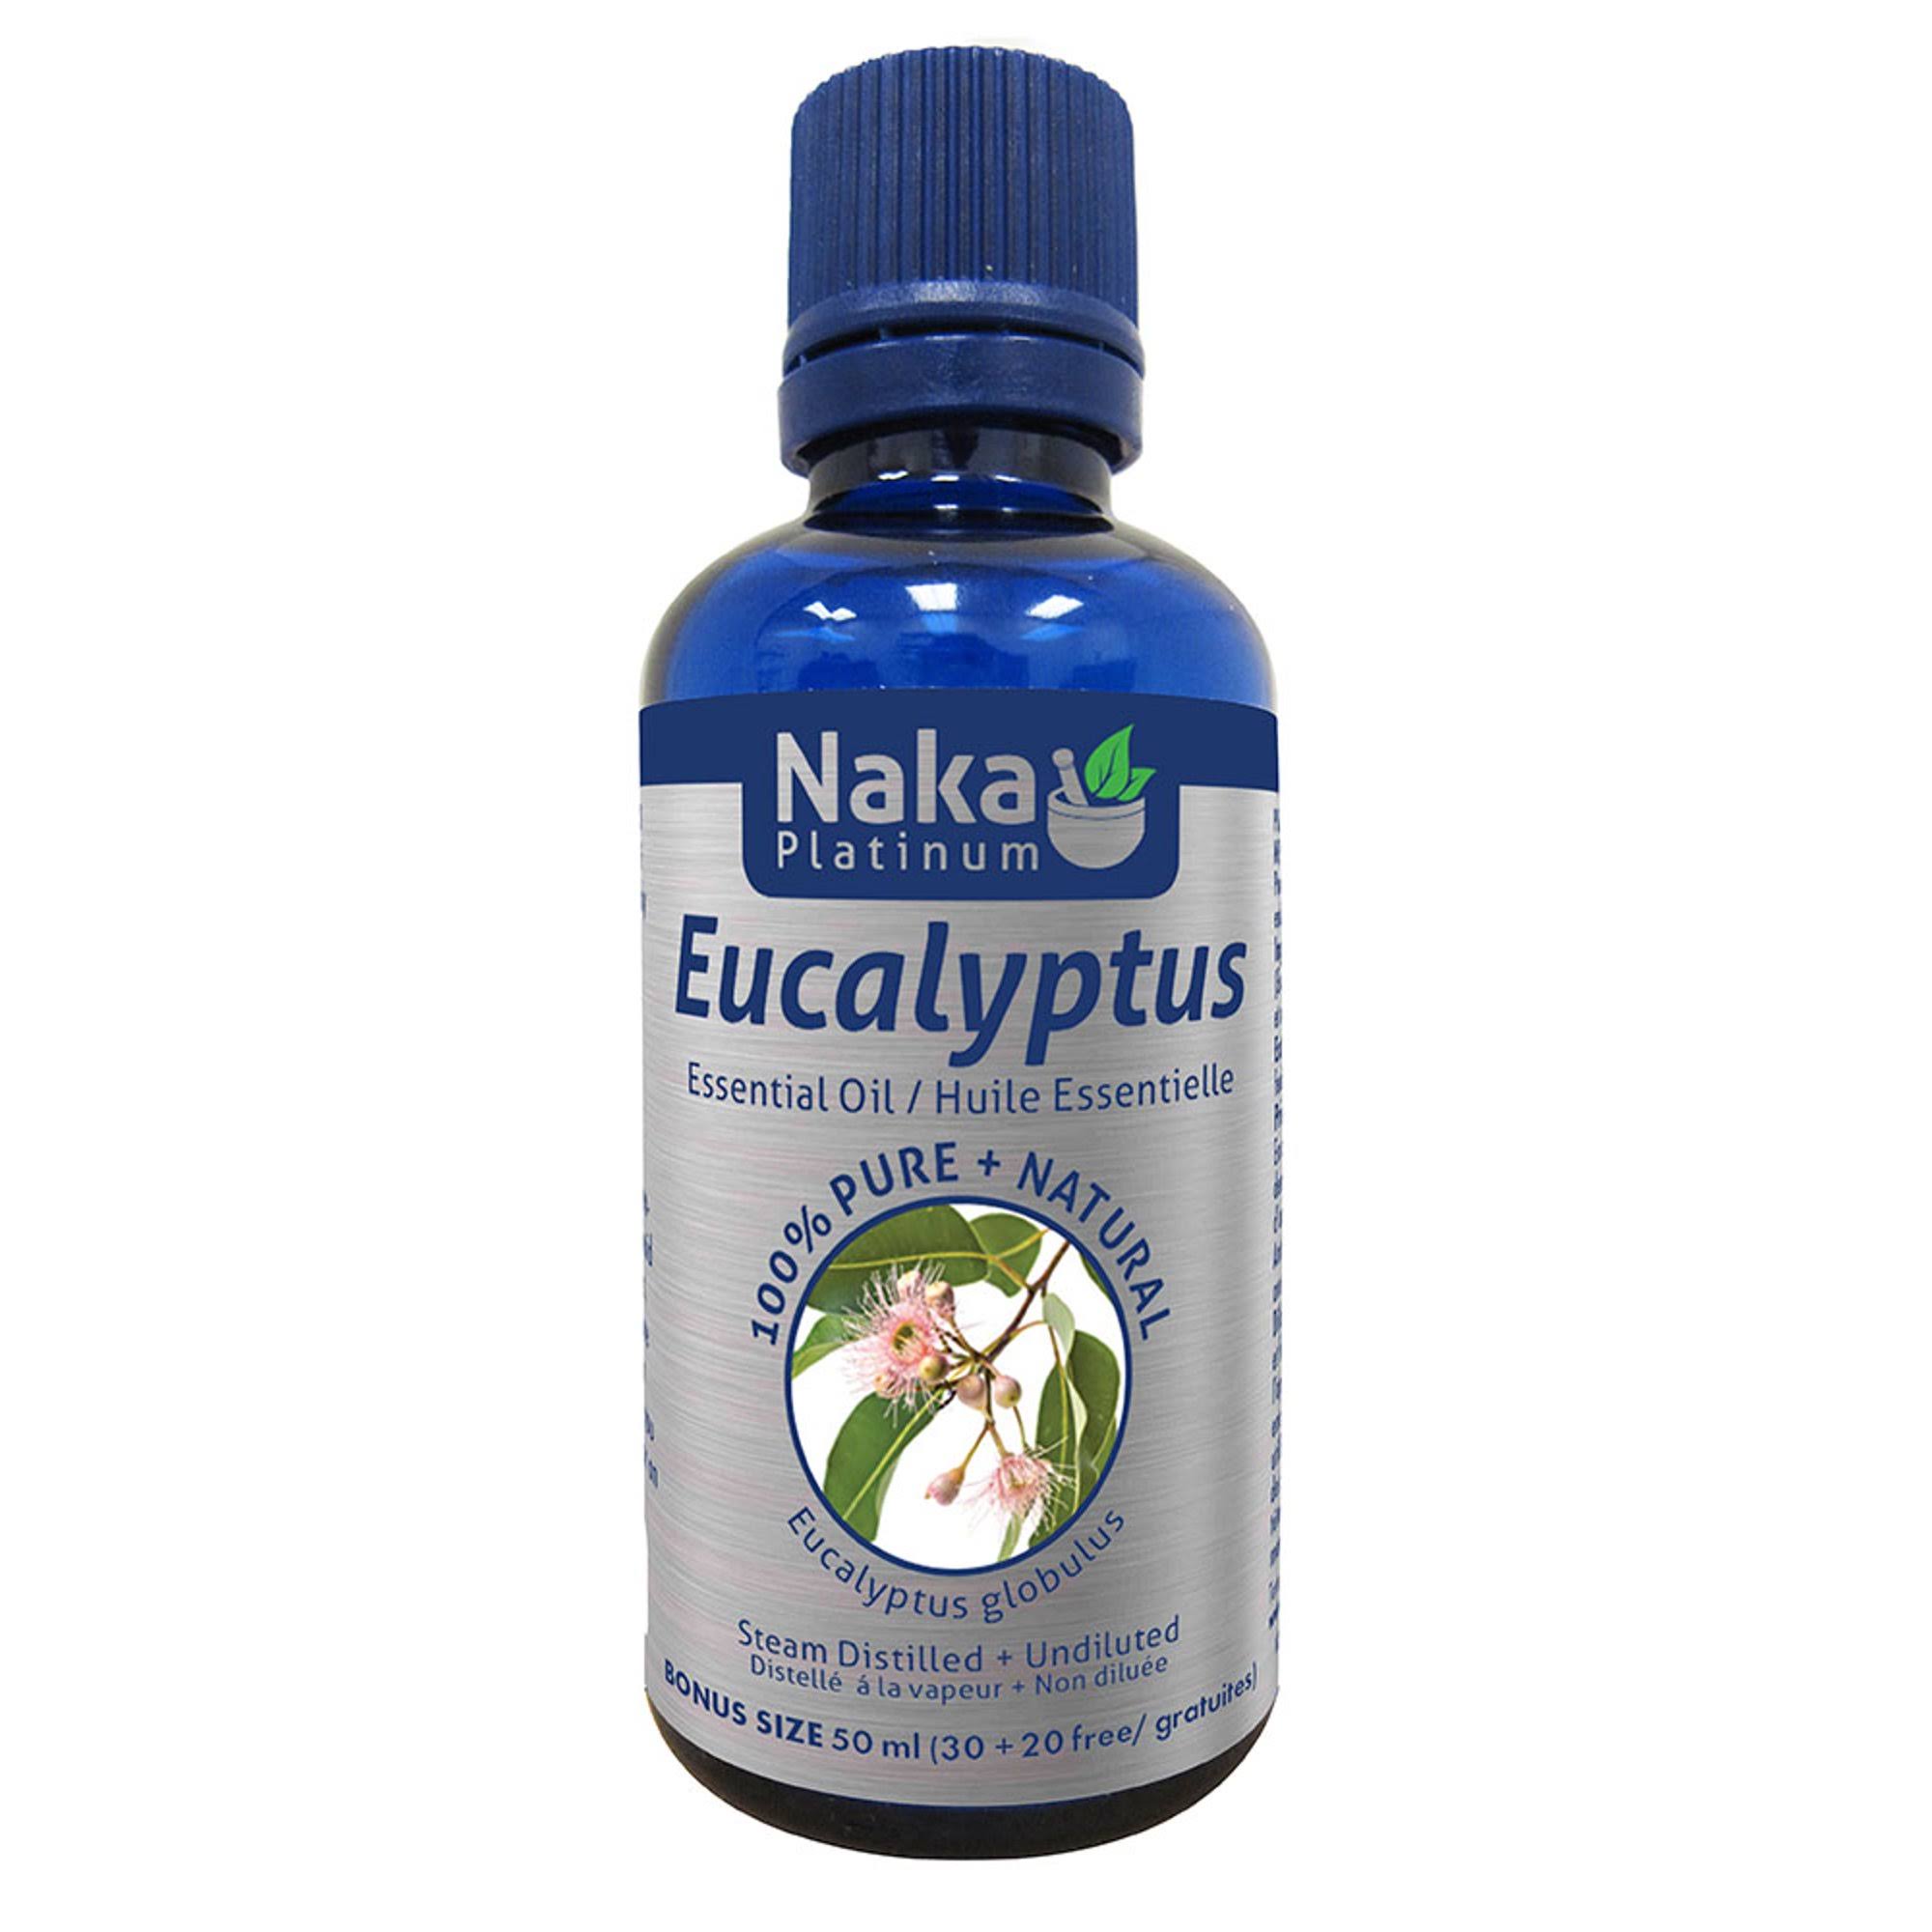 Naka 100% Pure Eucalyptus Essential Oil - 50ml + Bonus